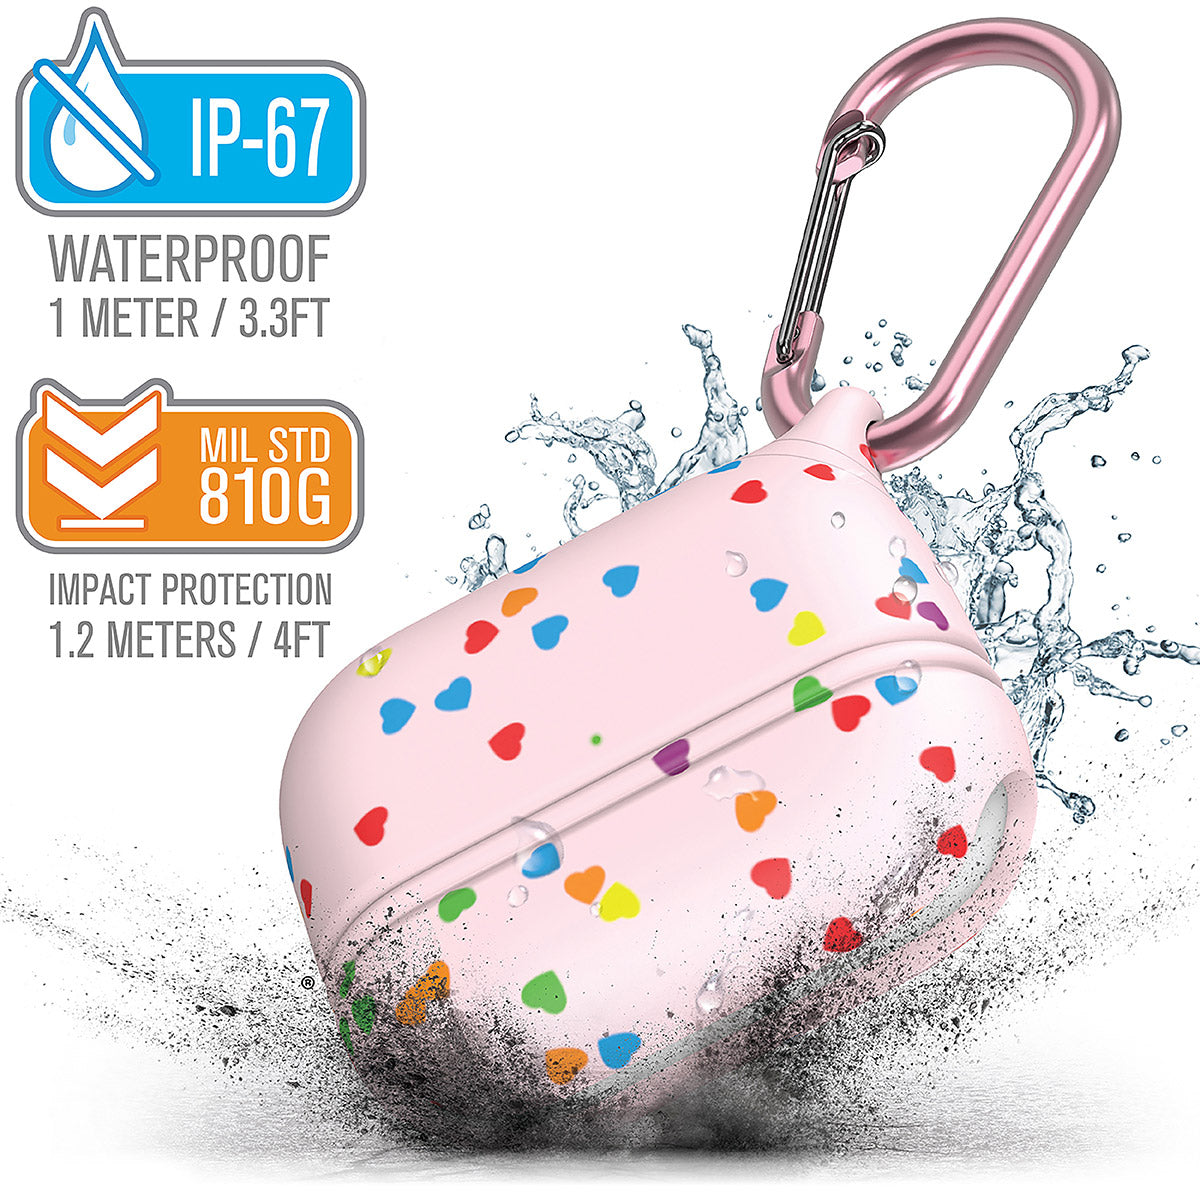 Funda Waterproof de Catalyst para los AirPods Pro - Multicolor - Apple (ES)